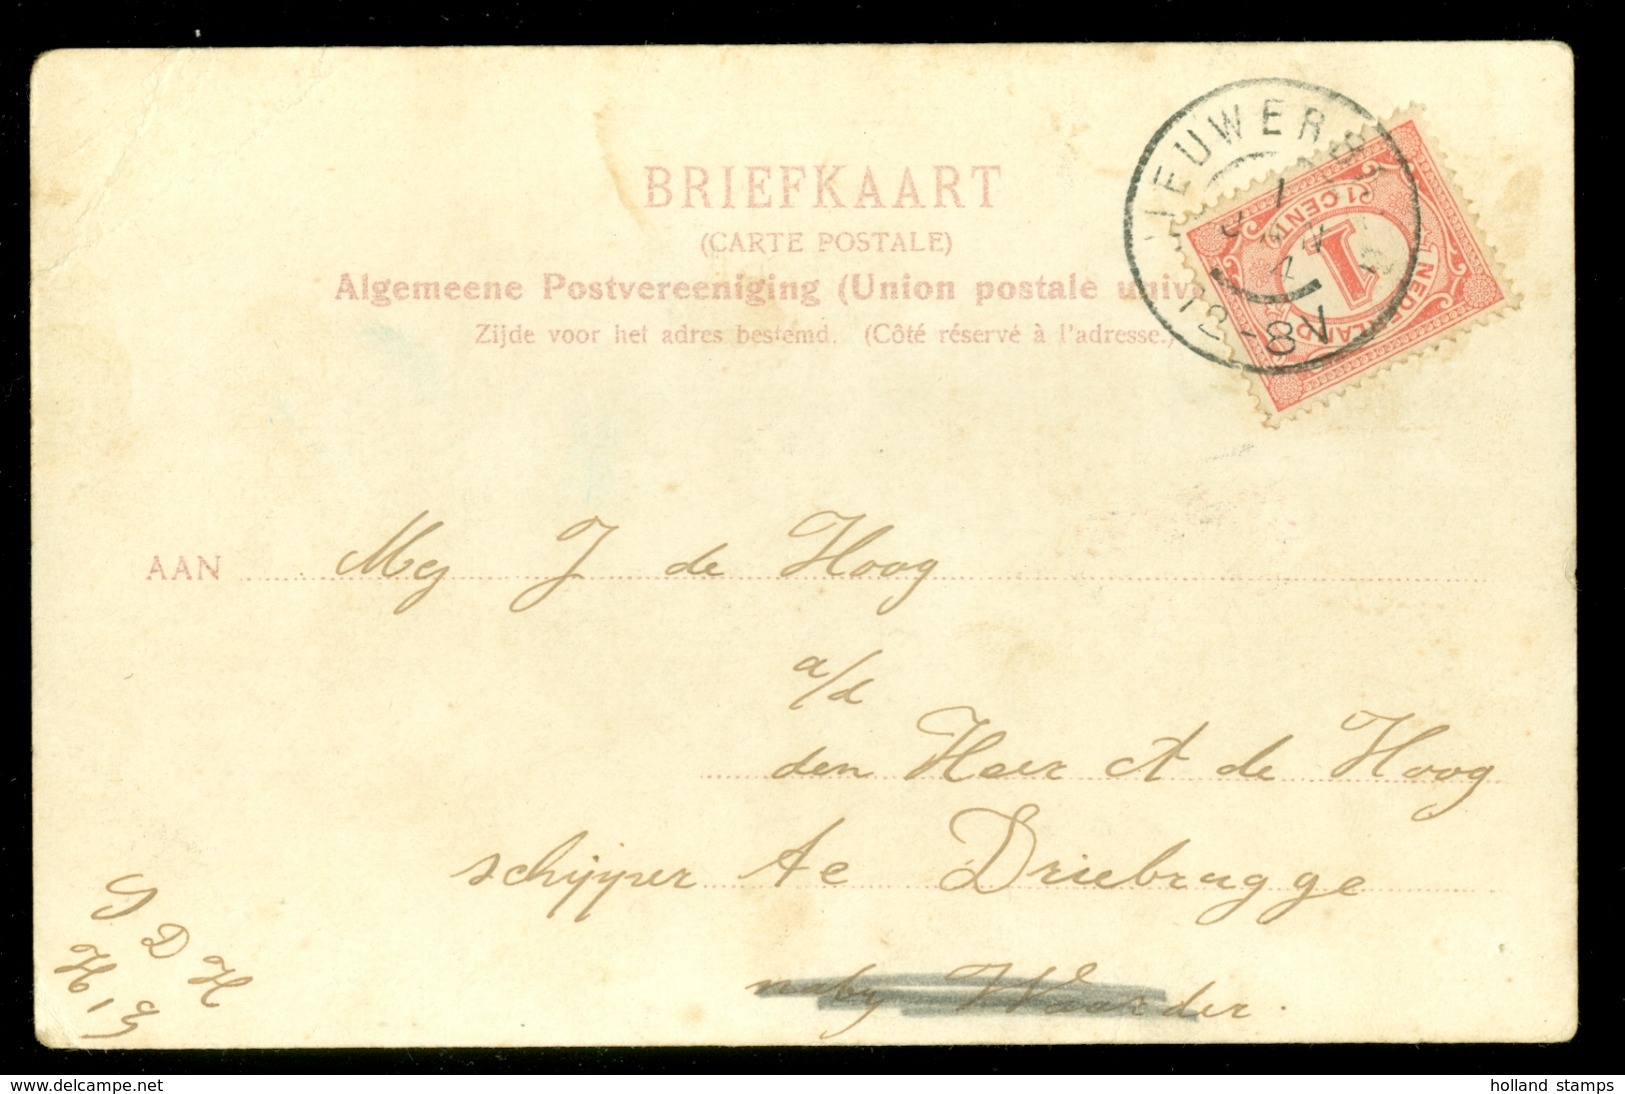 NEDERLAND BRIEFKAART Uit 1904 Gelopen Van NIEUWERSLUIS Naar DRIEBRUGGE  (10.628g) - Covers & Documents